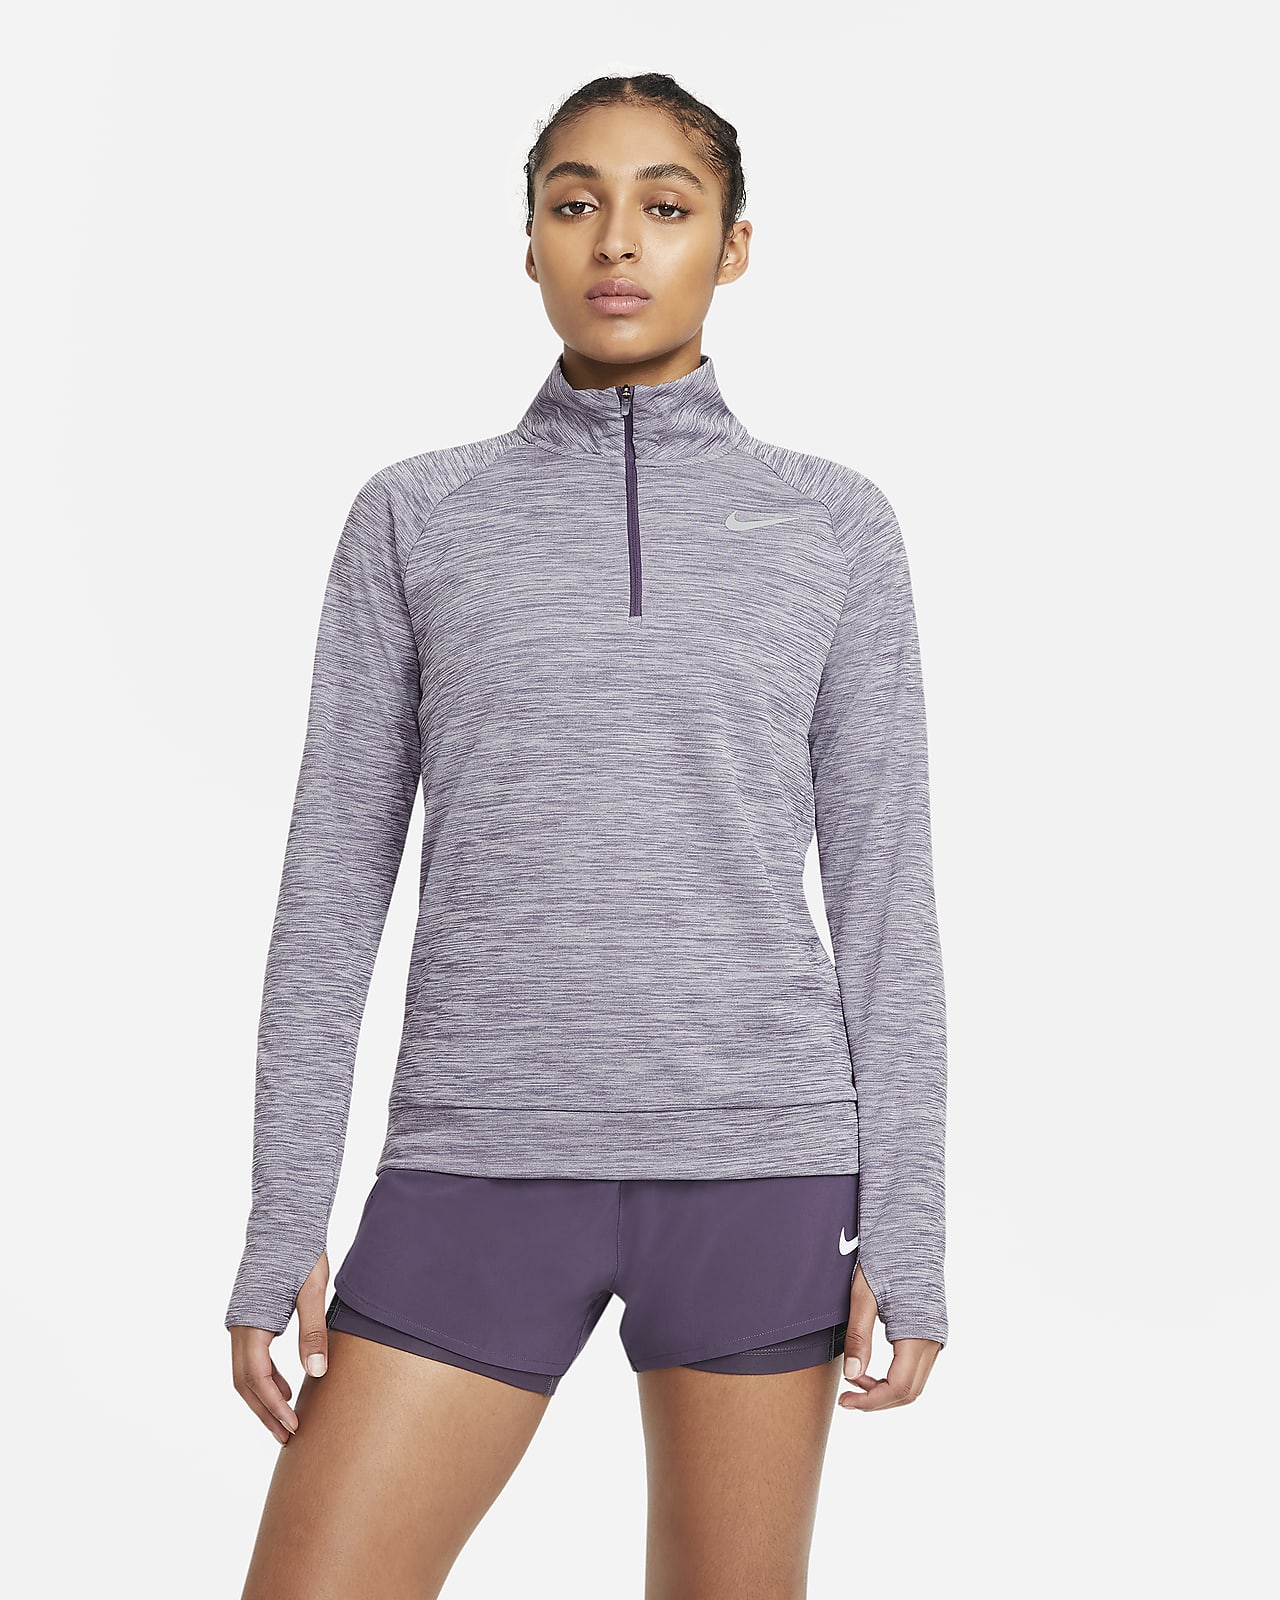 Prenda para la parte superior de running con cierre de 1/4 para mujer Nike Pacer